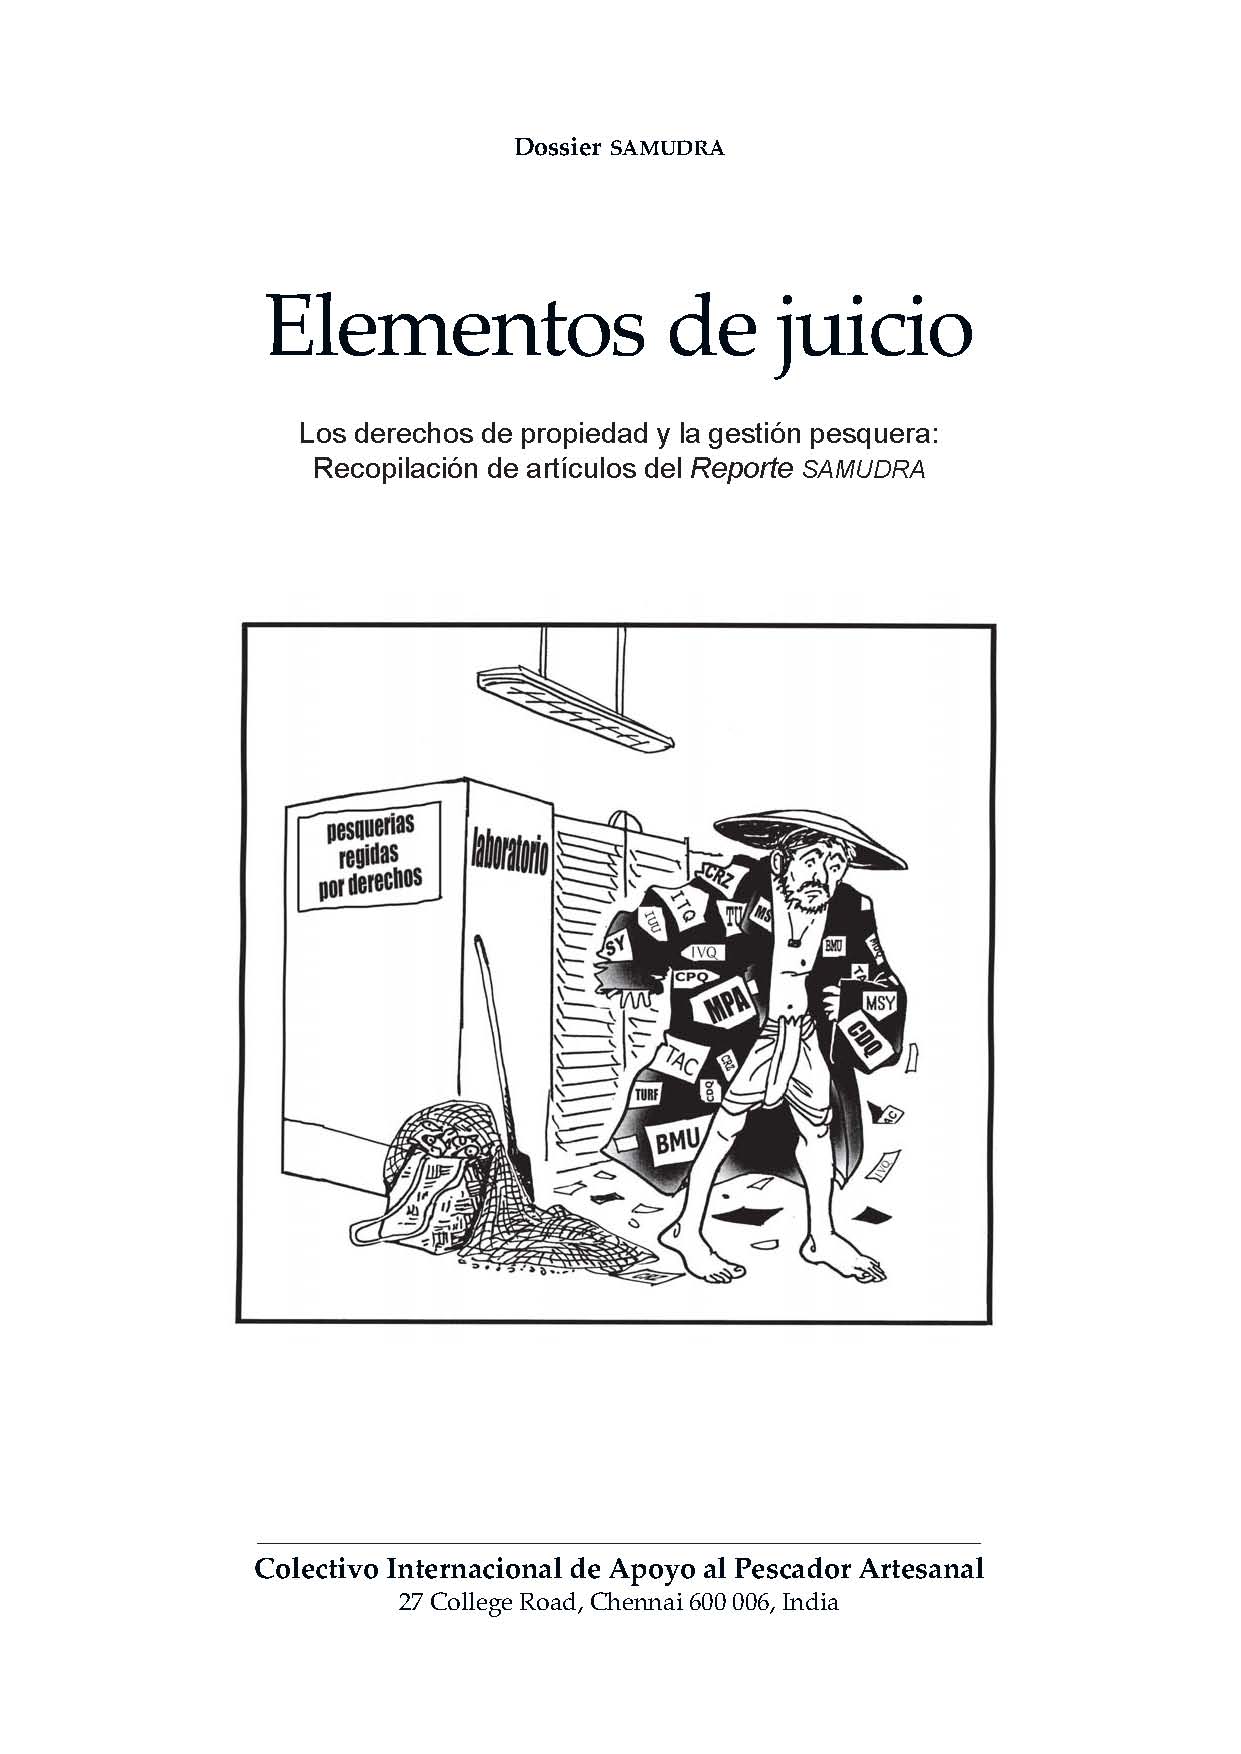 Elementos de juicio – Los derechos de propiedad y la gestión pesquera: Recopilación de articulos de la Revista SAMUDRA